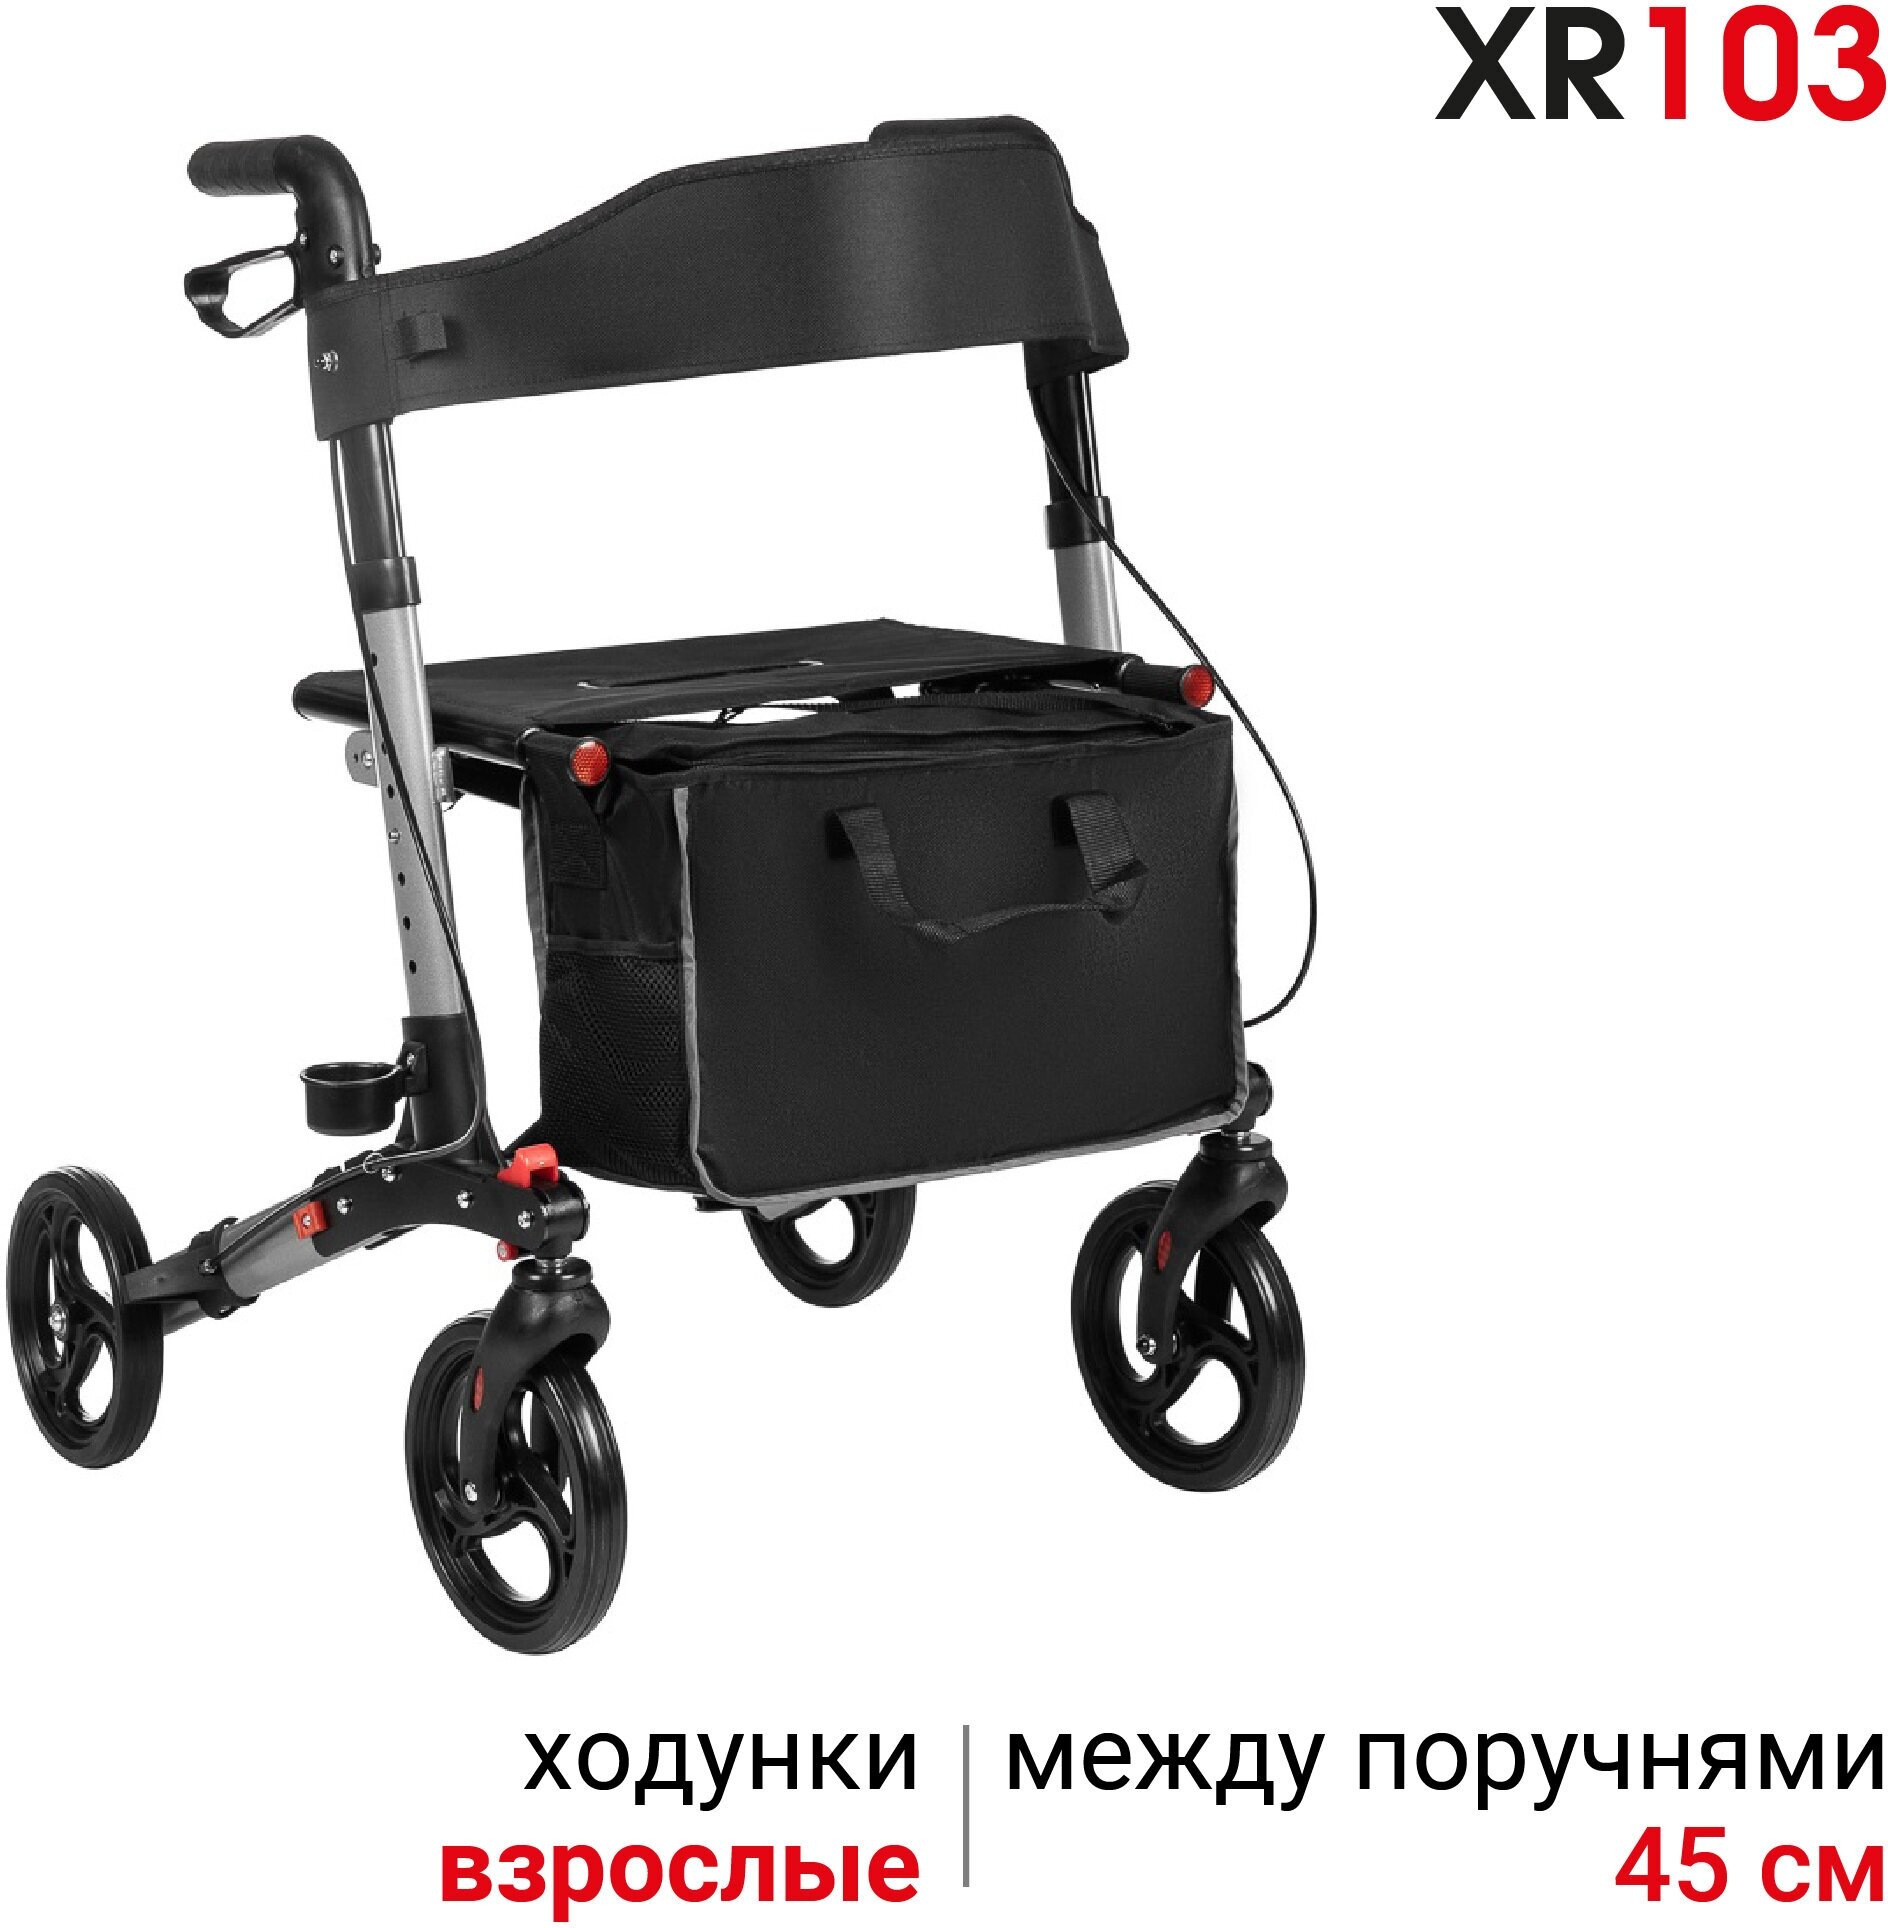 Ходунки роллаторы для пожилых Ortonica XR 103 медицинские складные с сиденьем 4 колеса алюминиевые регулируемые по высоте до 136 кг серебристая рама